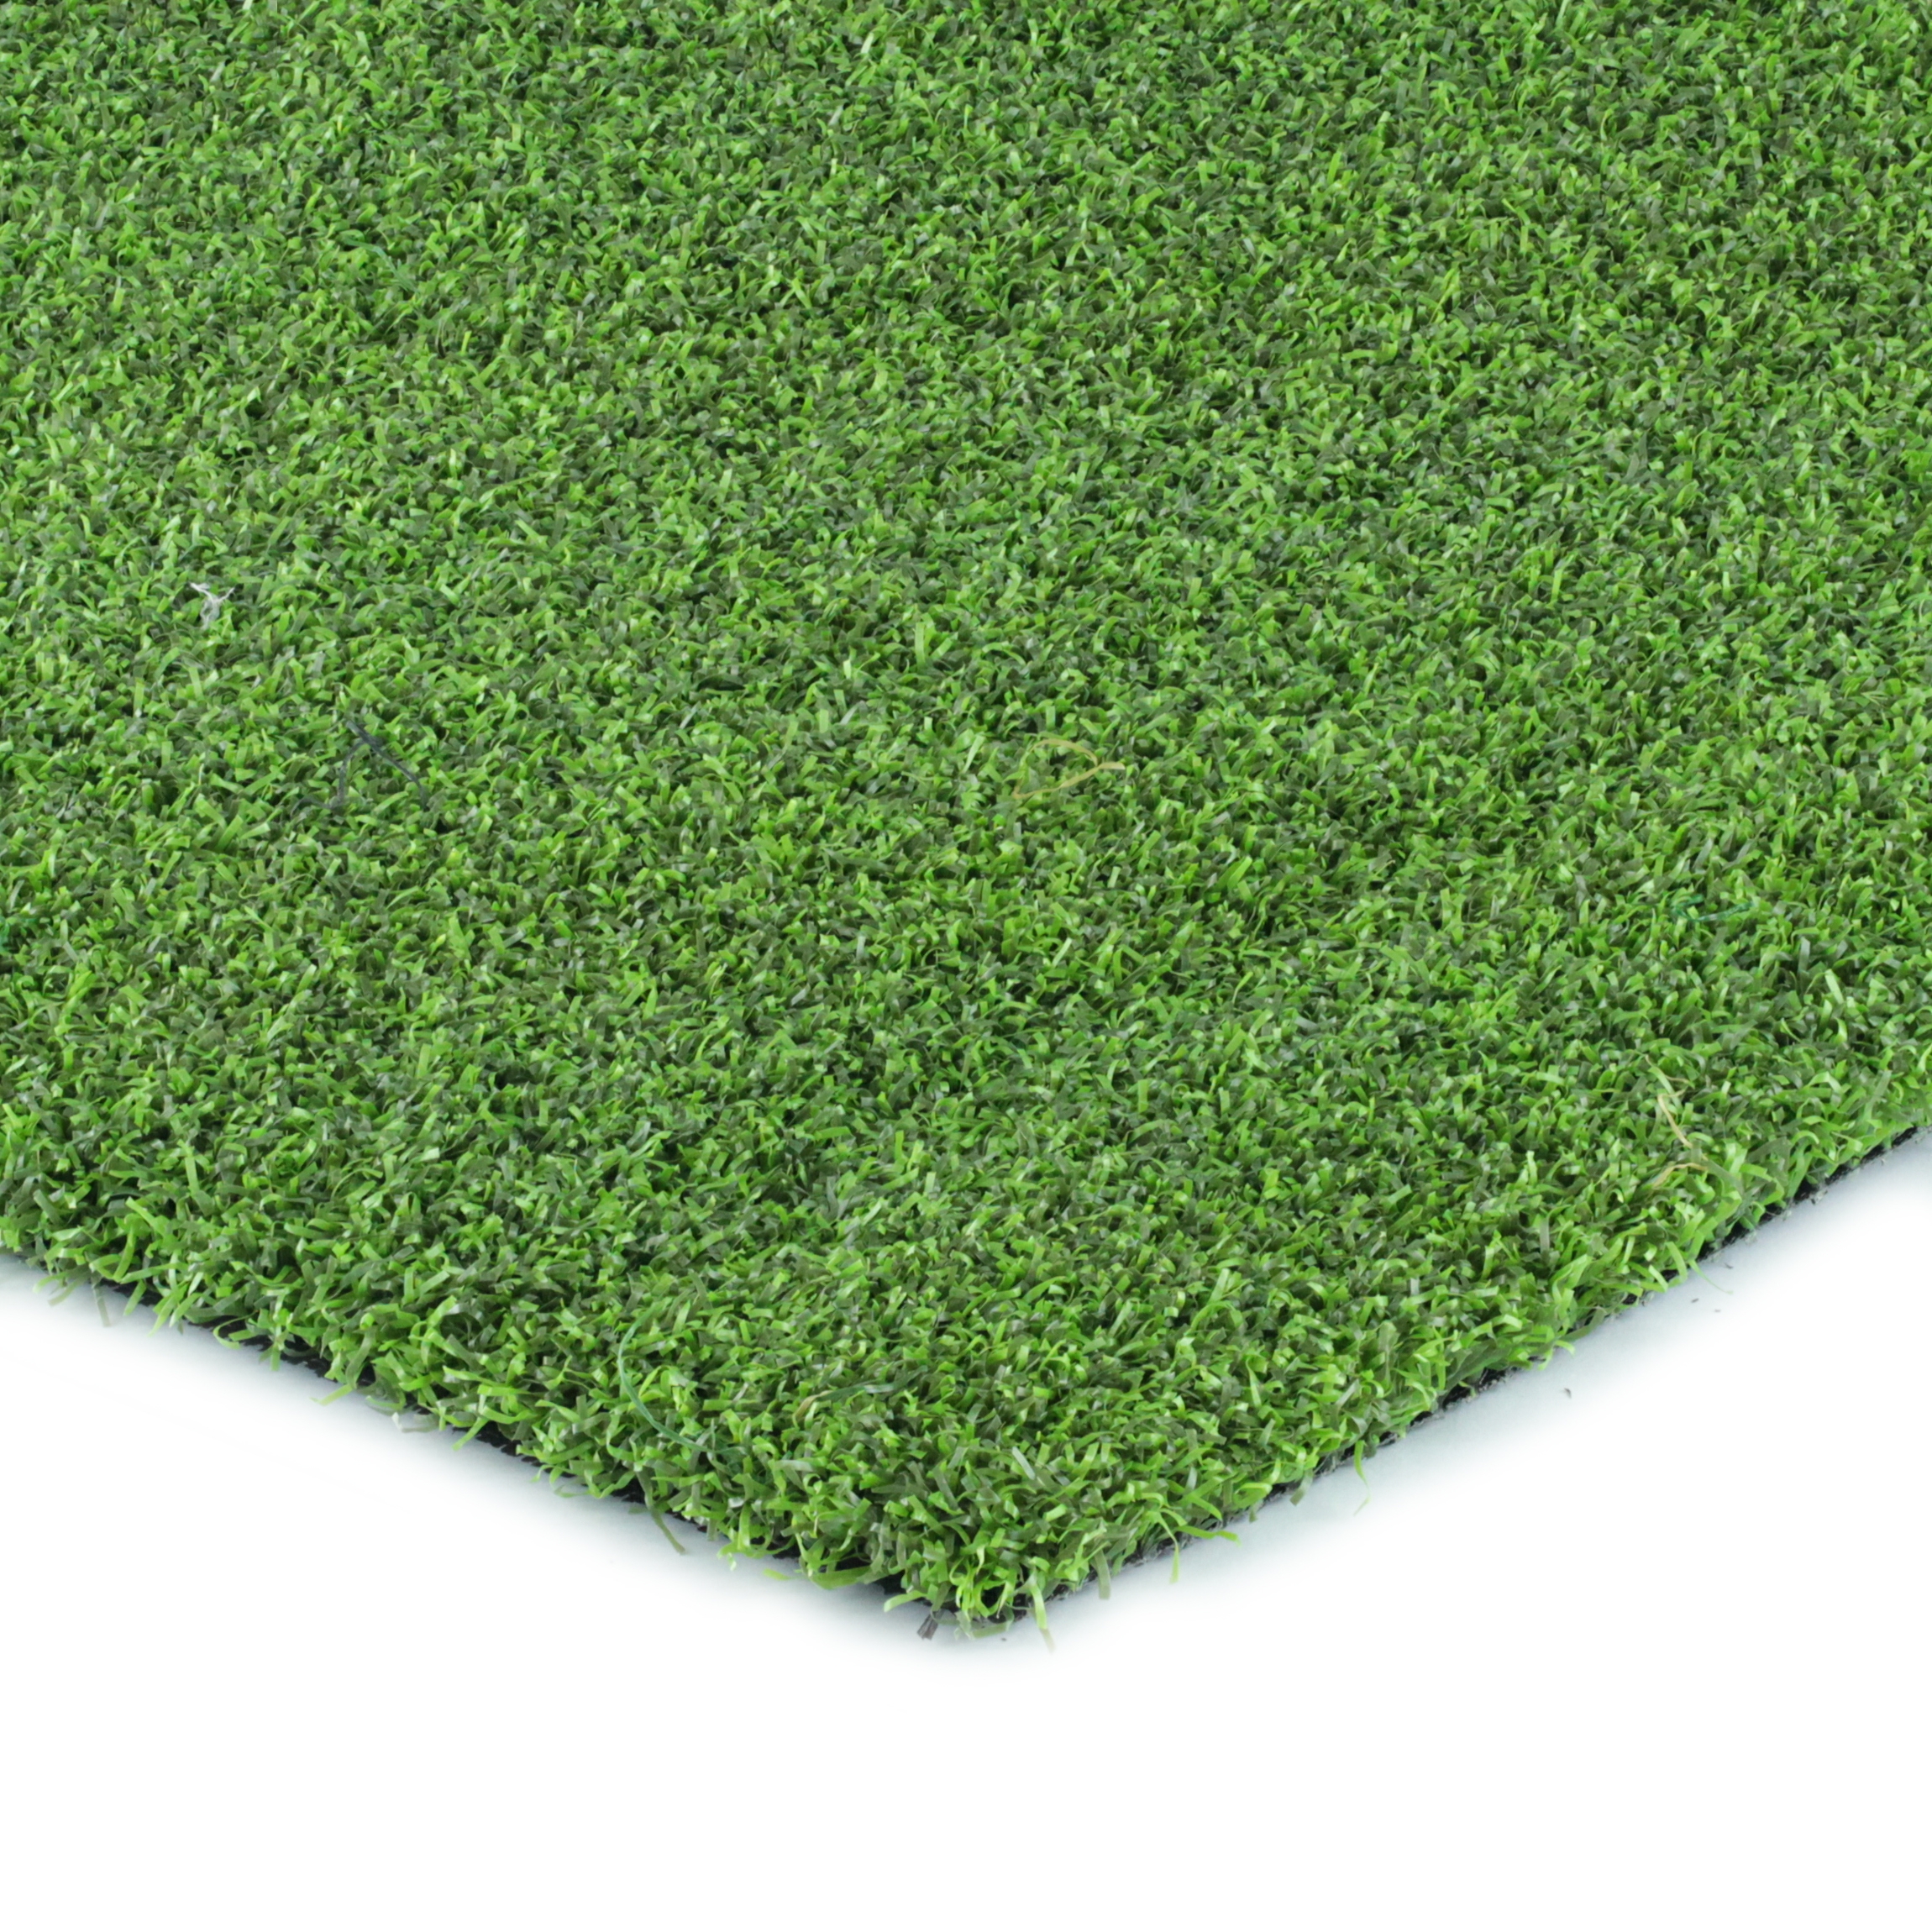 Artificial Grass Accu-Putt Best Artificial Grass